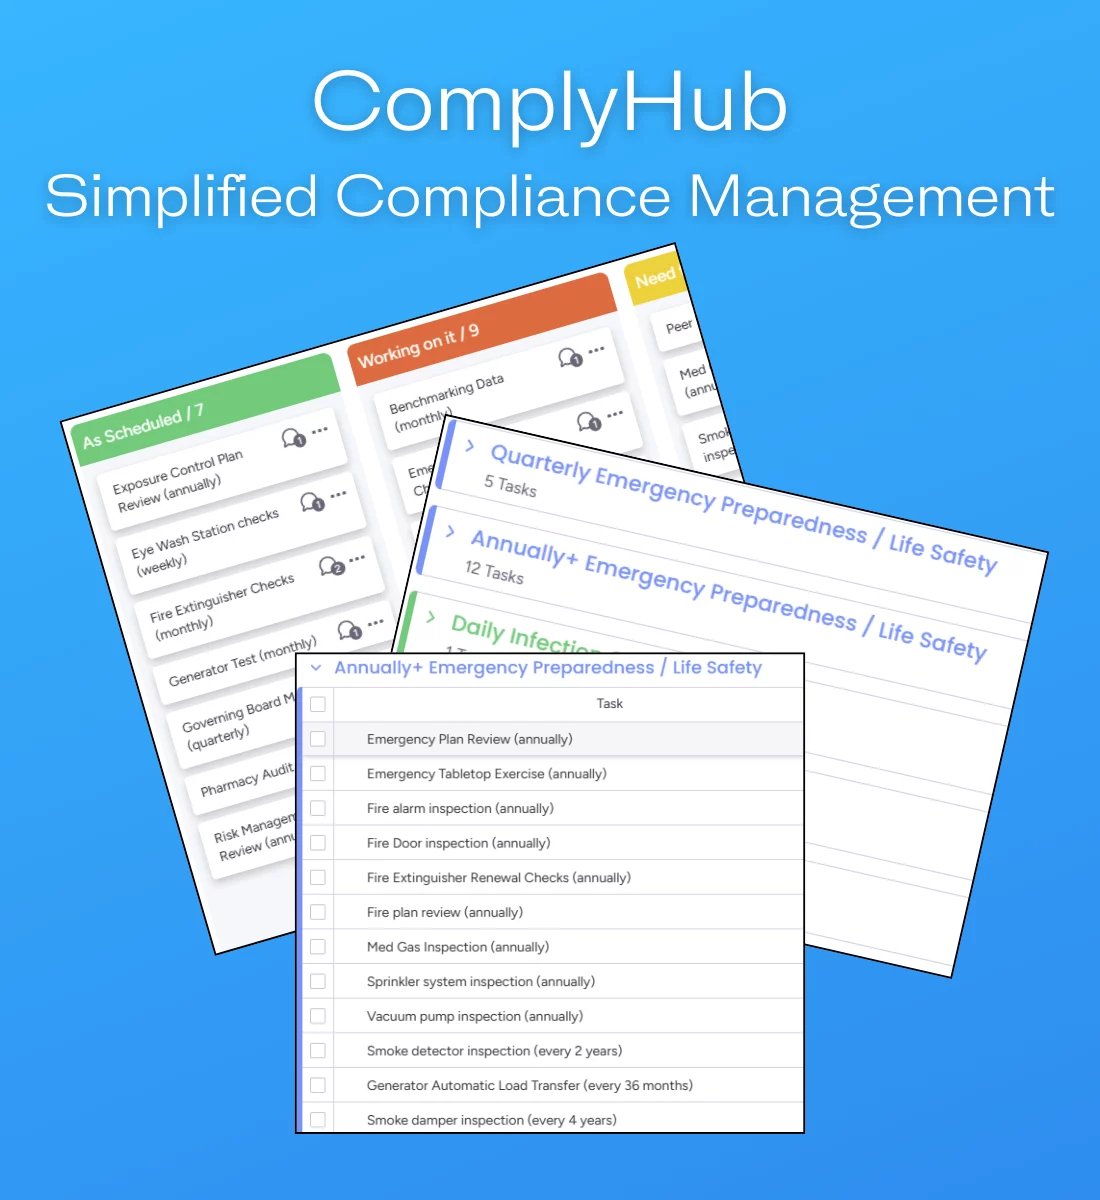 ComplyHub